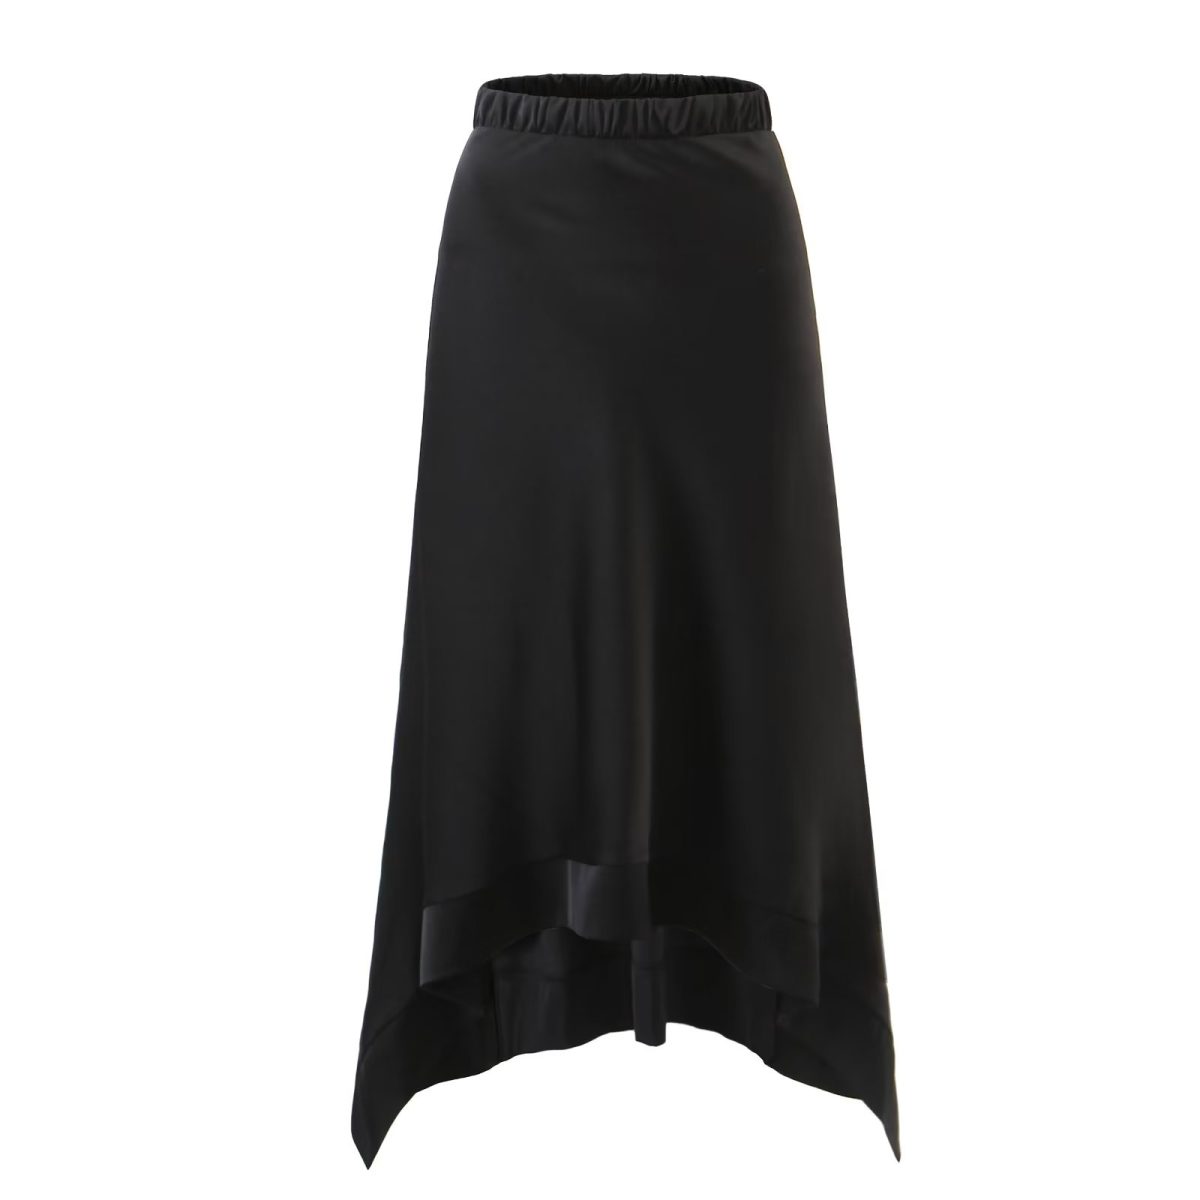 Irregular Asymmetric Skirt in Skirts